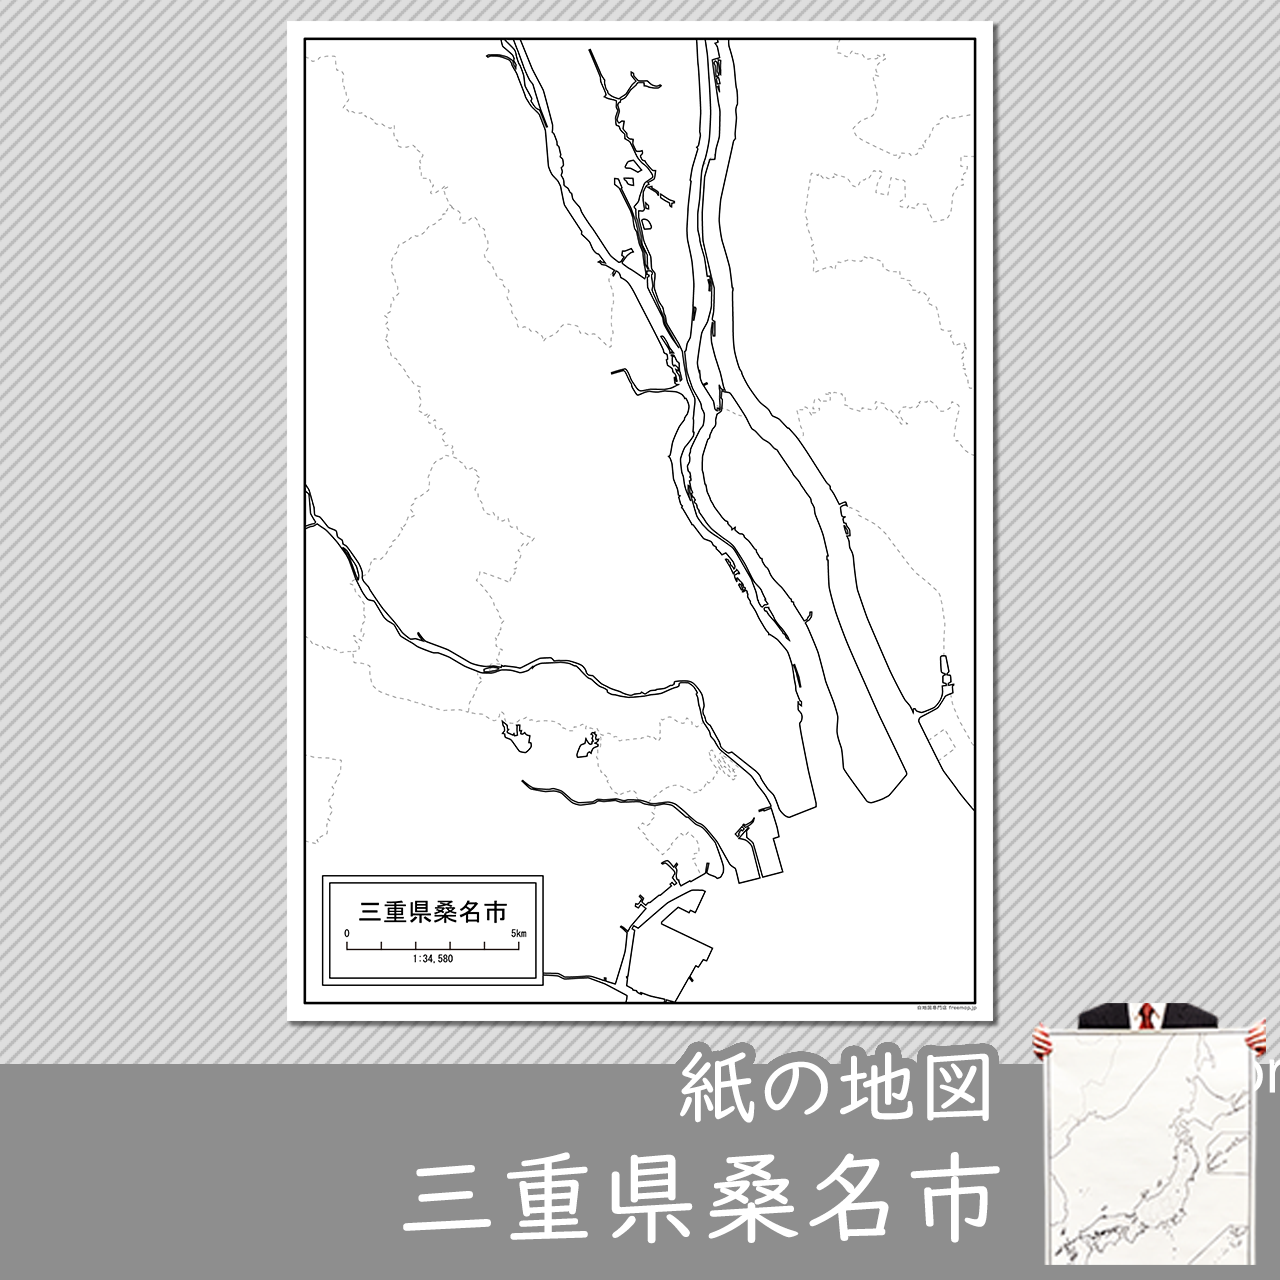 桑名市の紙の白地図のサムネイル